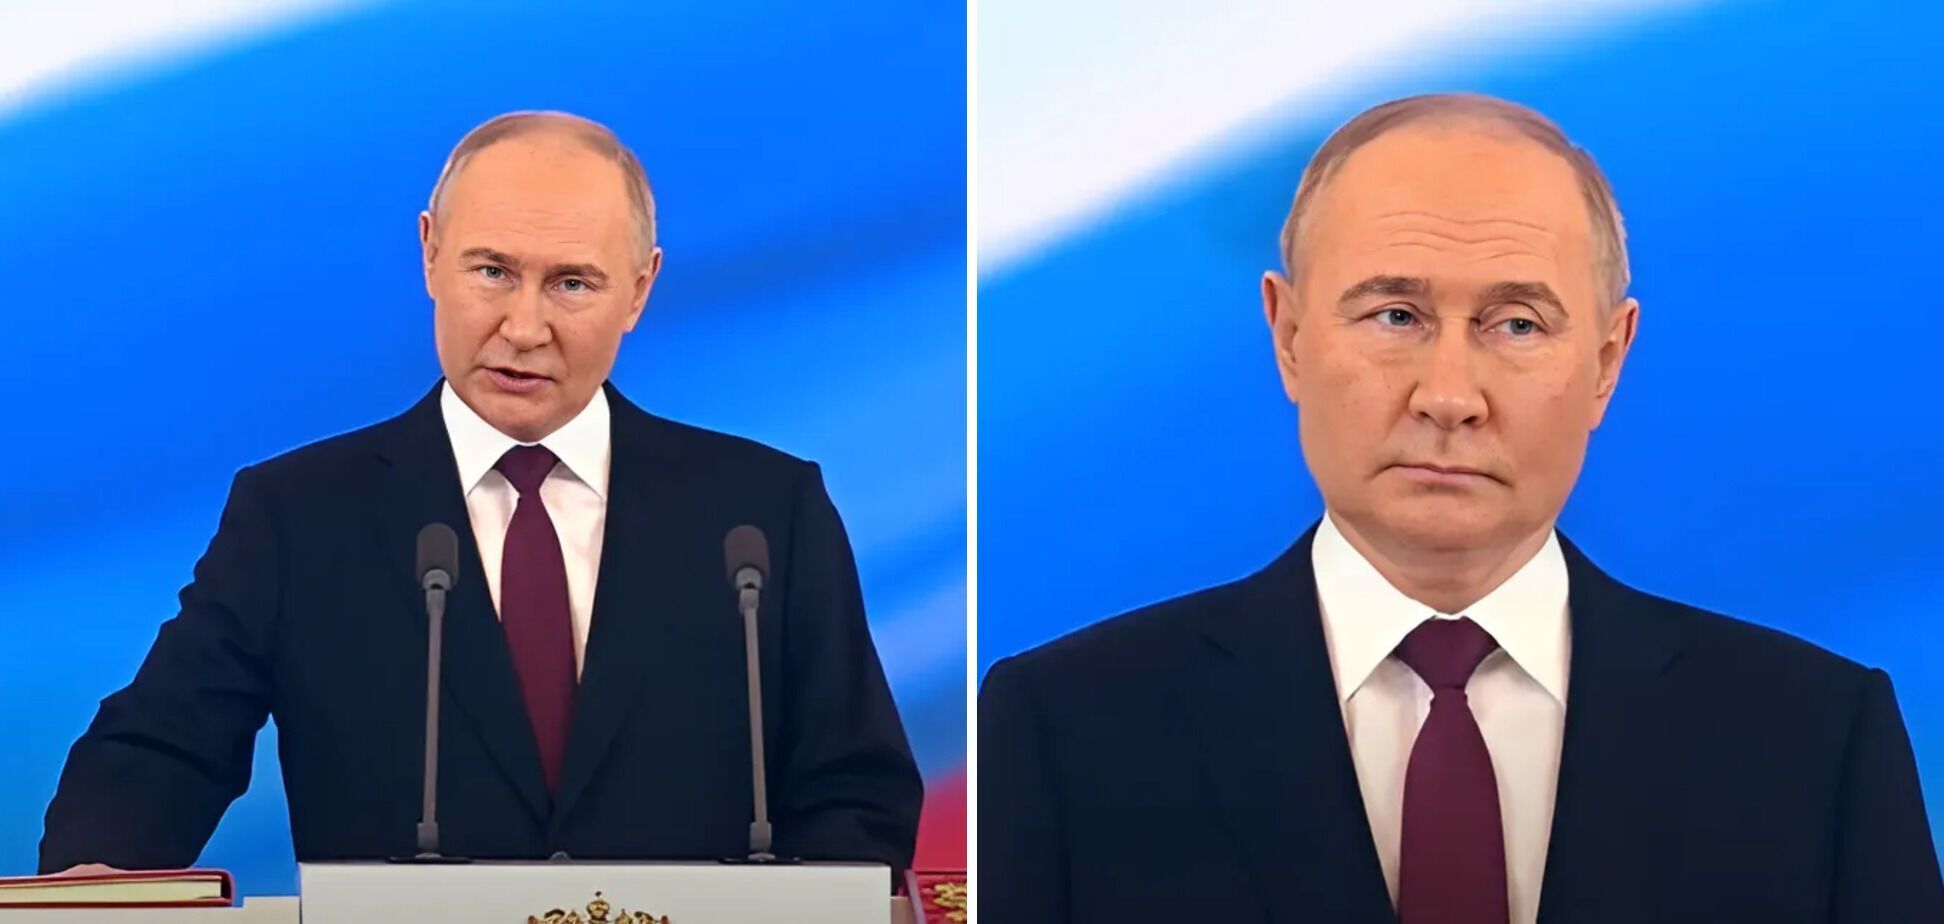 Ботокс или двойник? Как изменился Путин за 24 года правления РФ. Фото с инаугураций